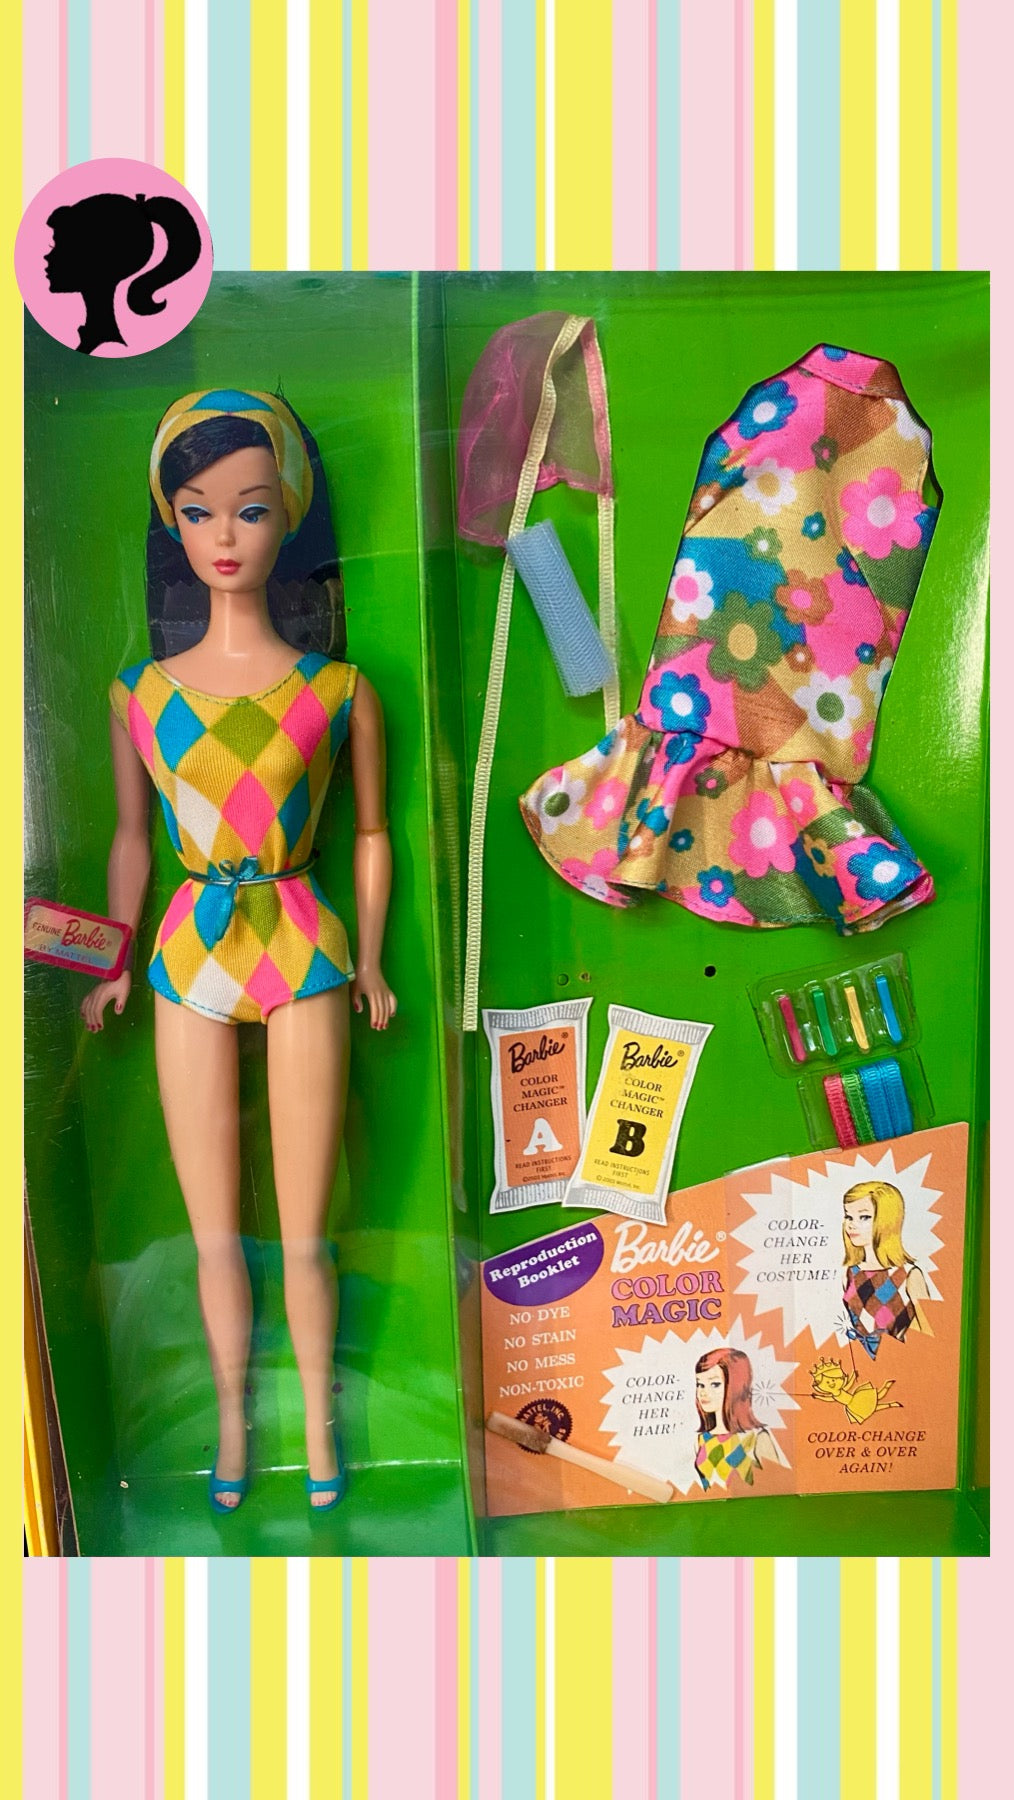 Colour Magic Barbie